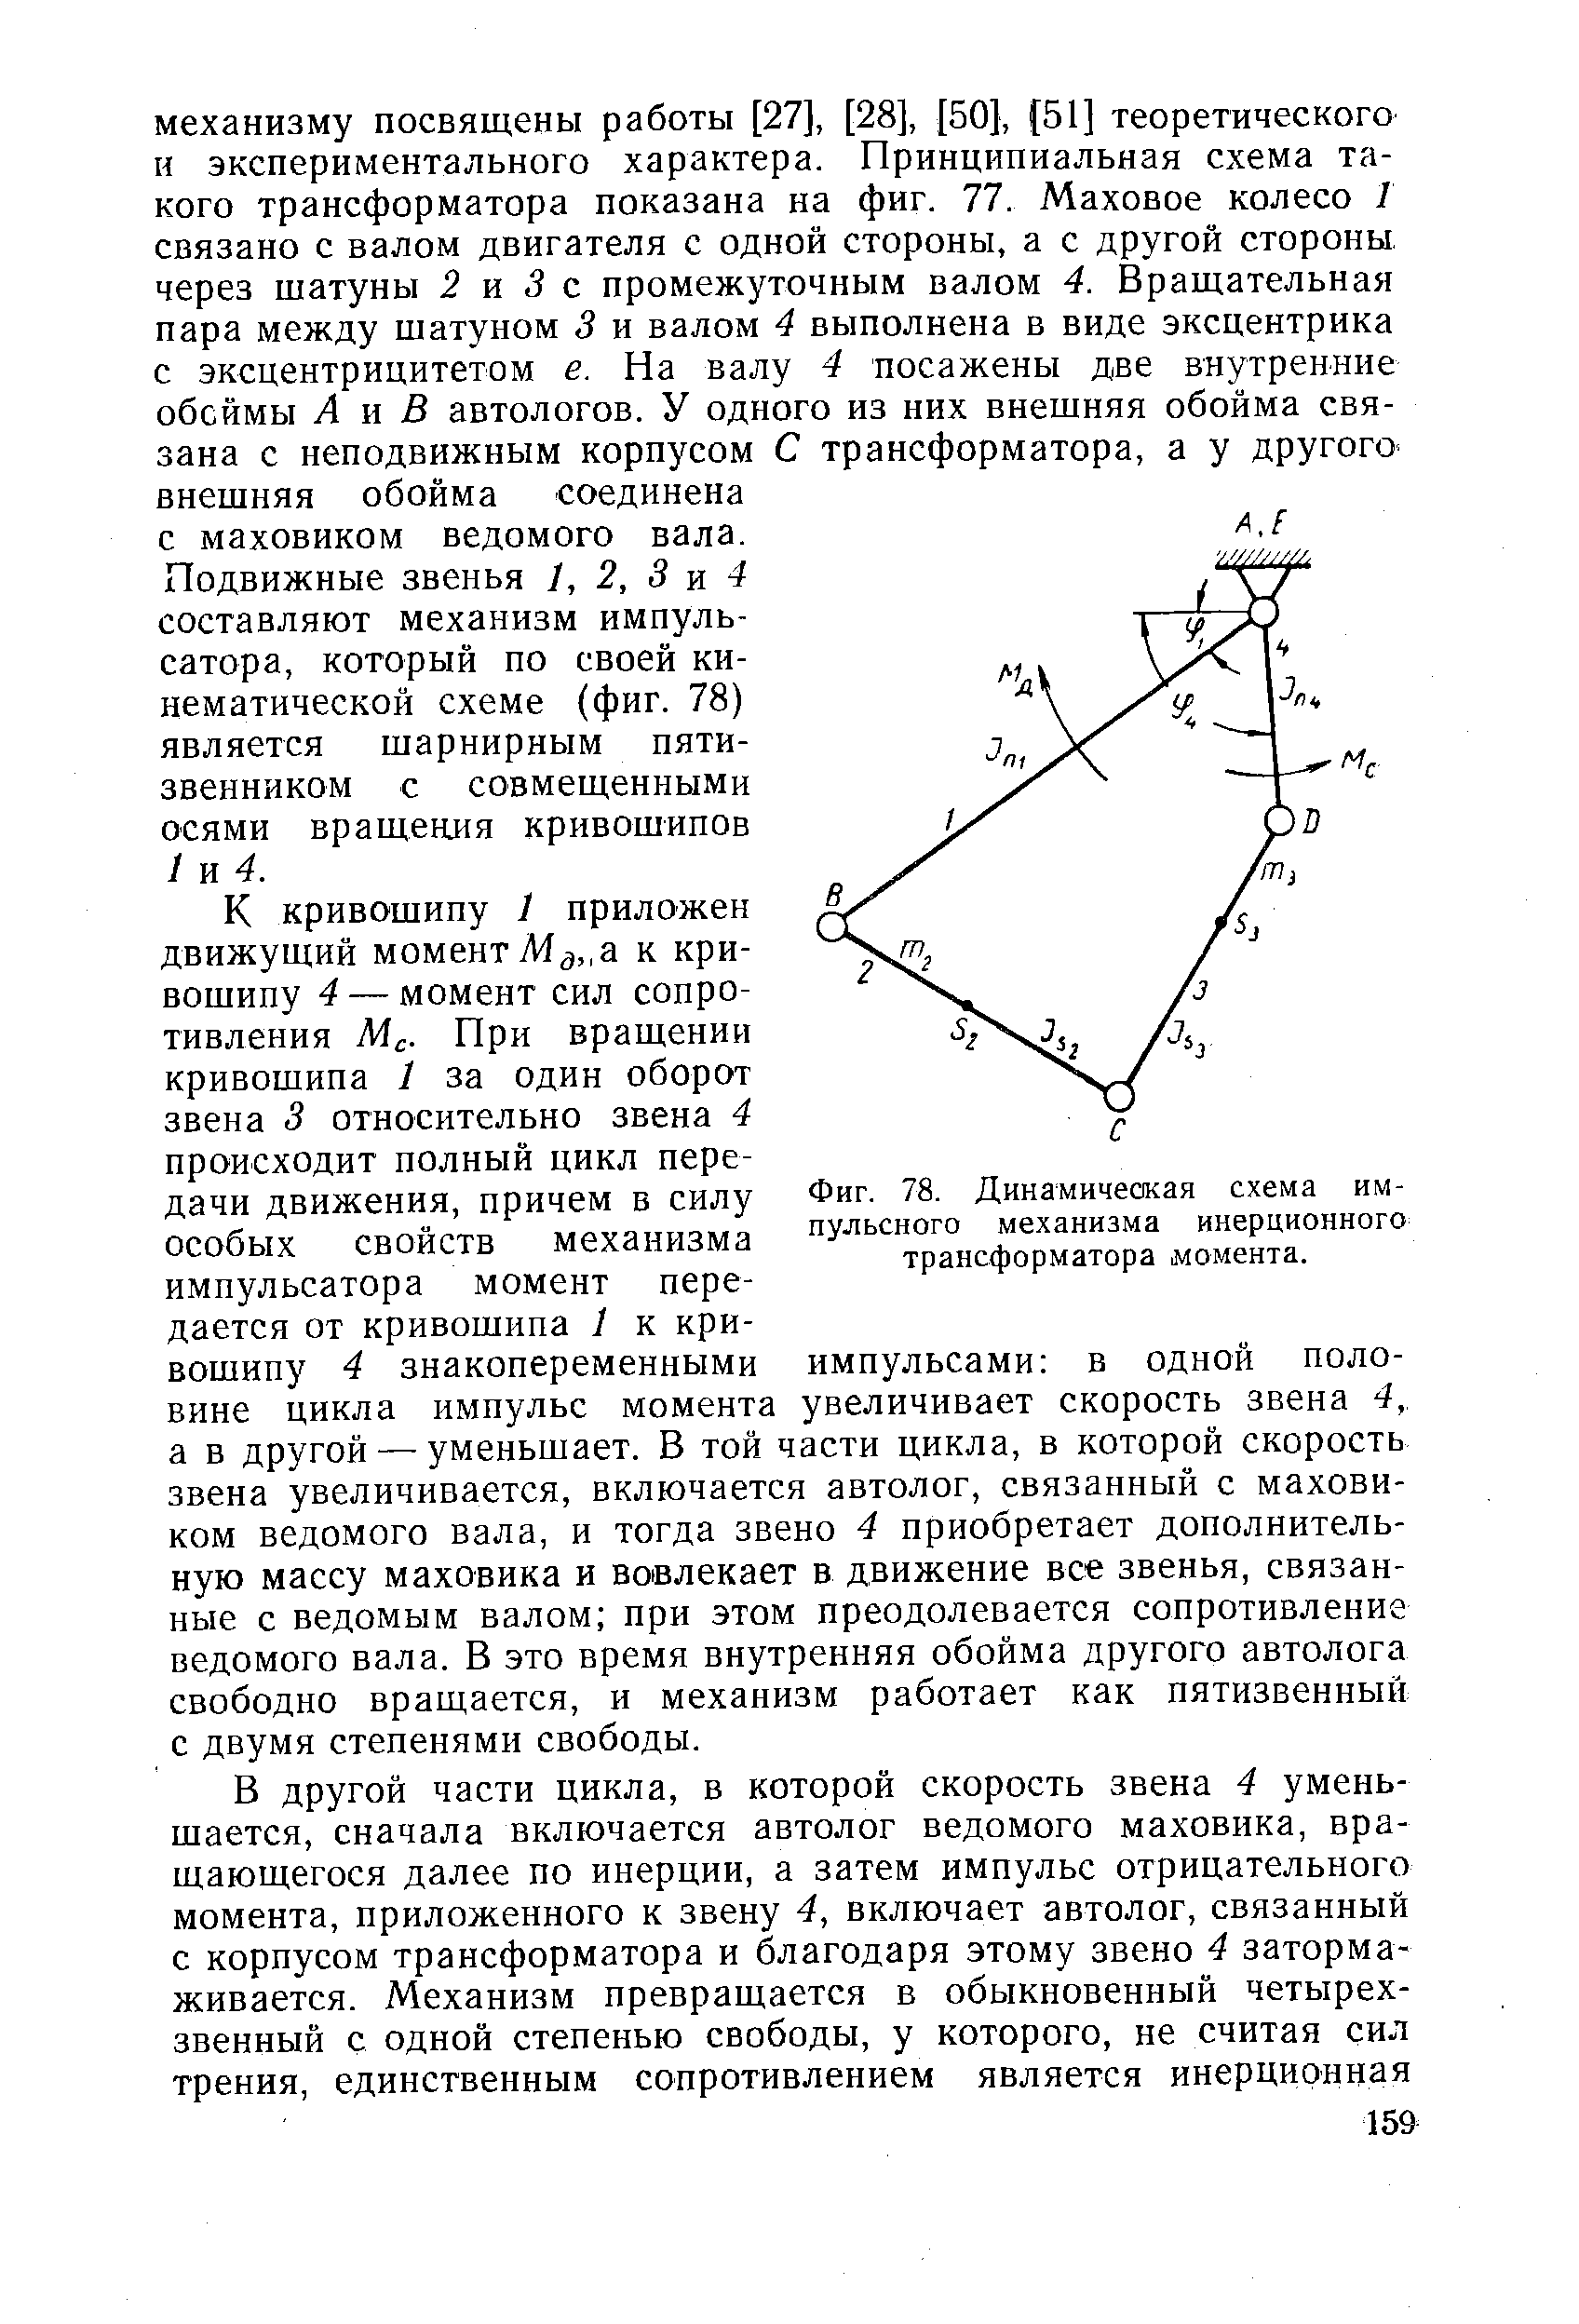 Фиг. 78. Динамическая схема импульсного механизма инерционного трансформатора момента.
